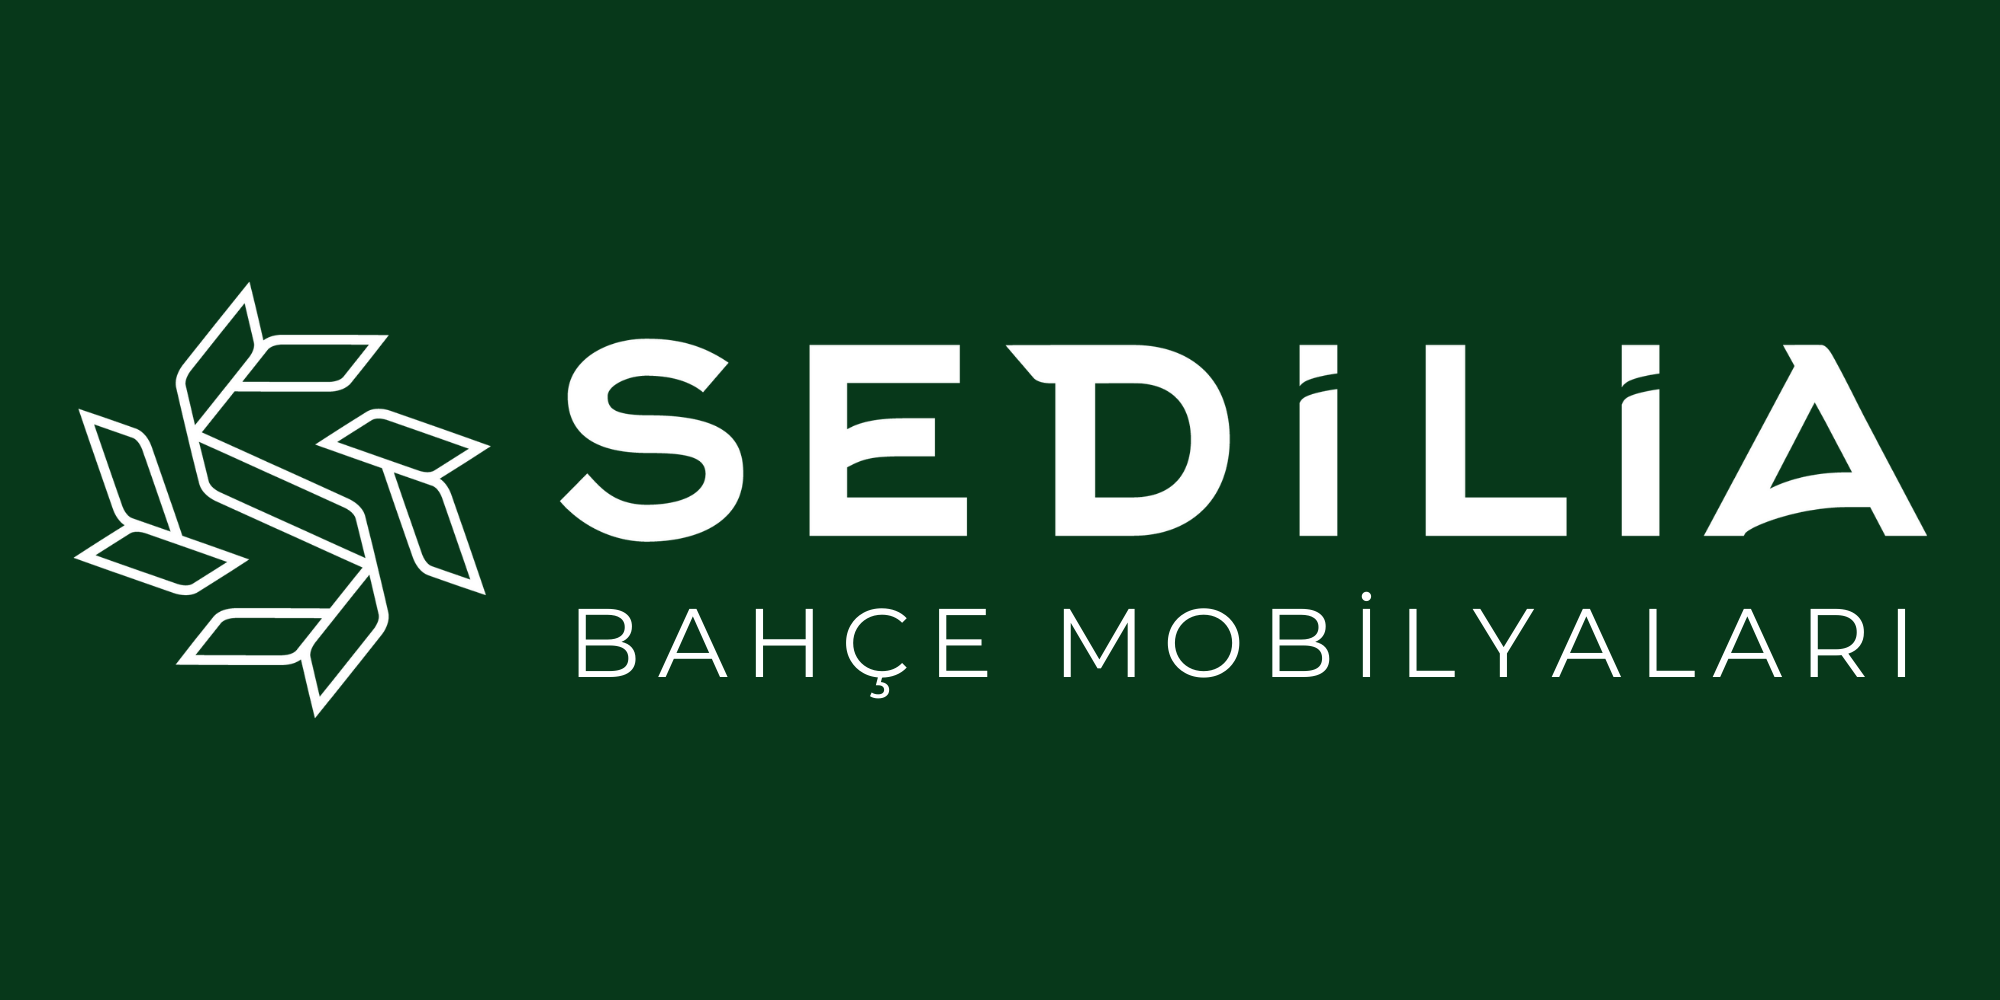 SEDILIA Logo